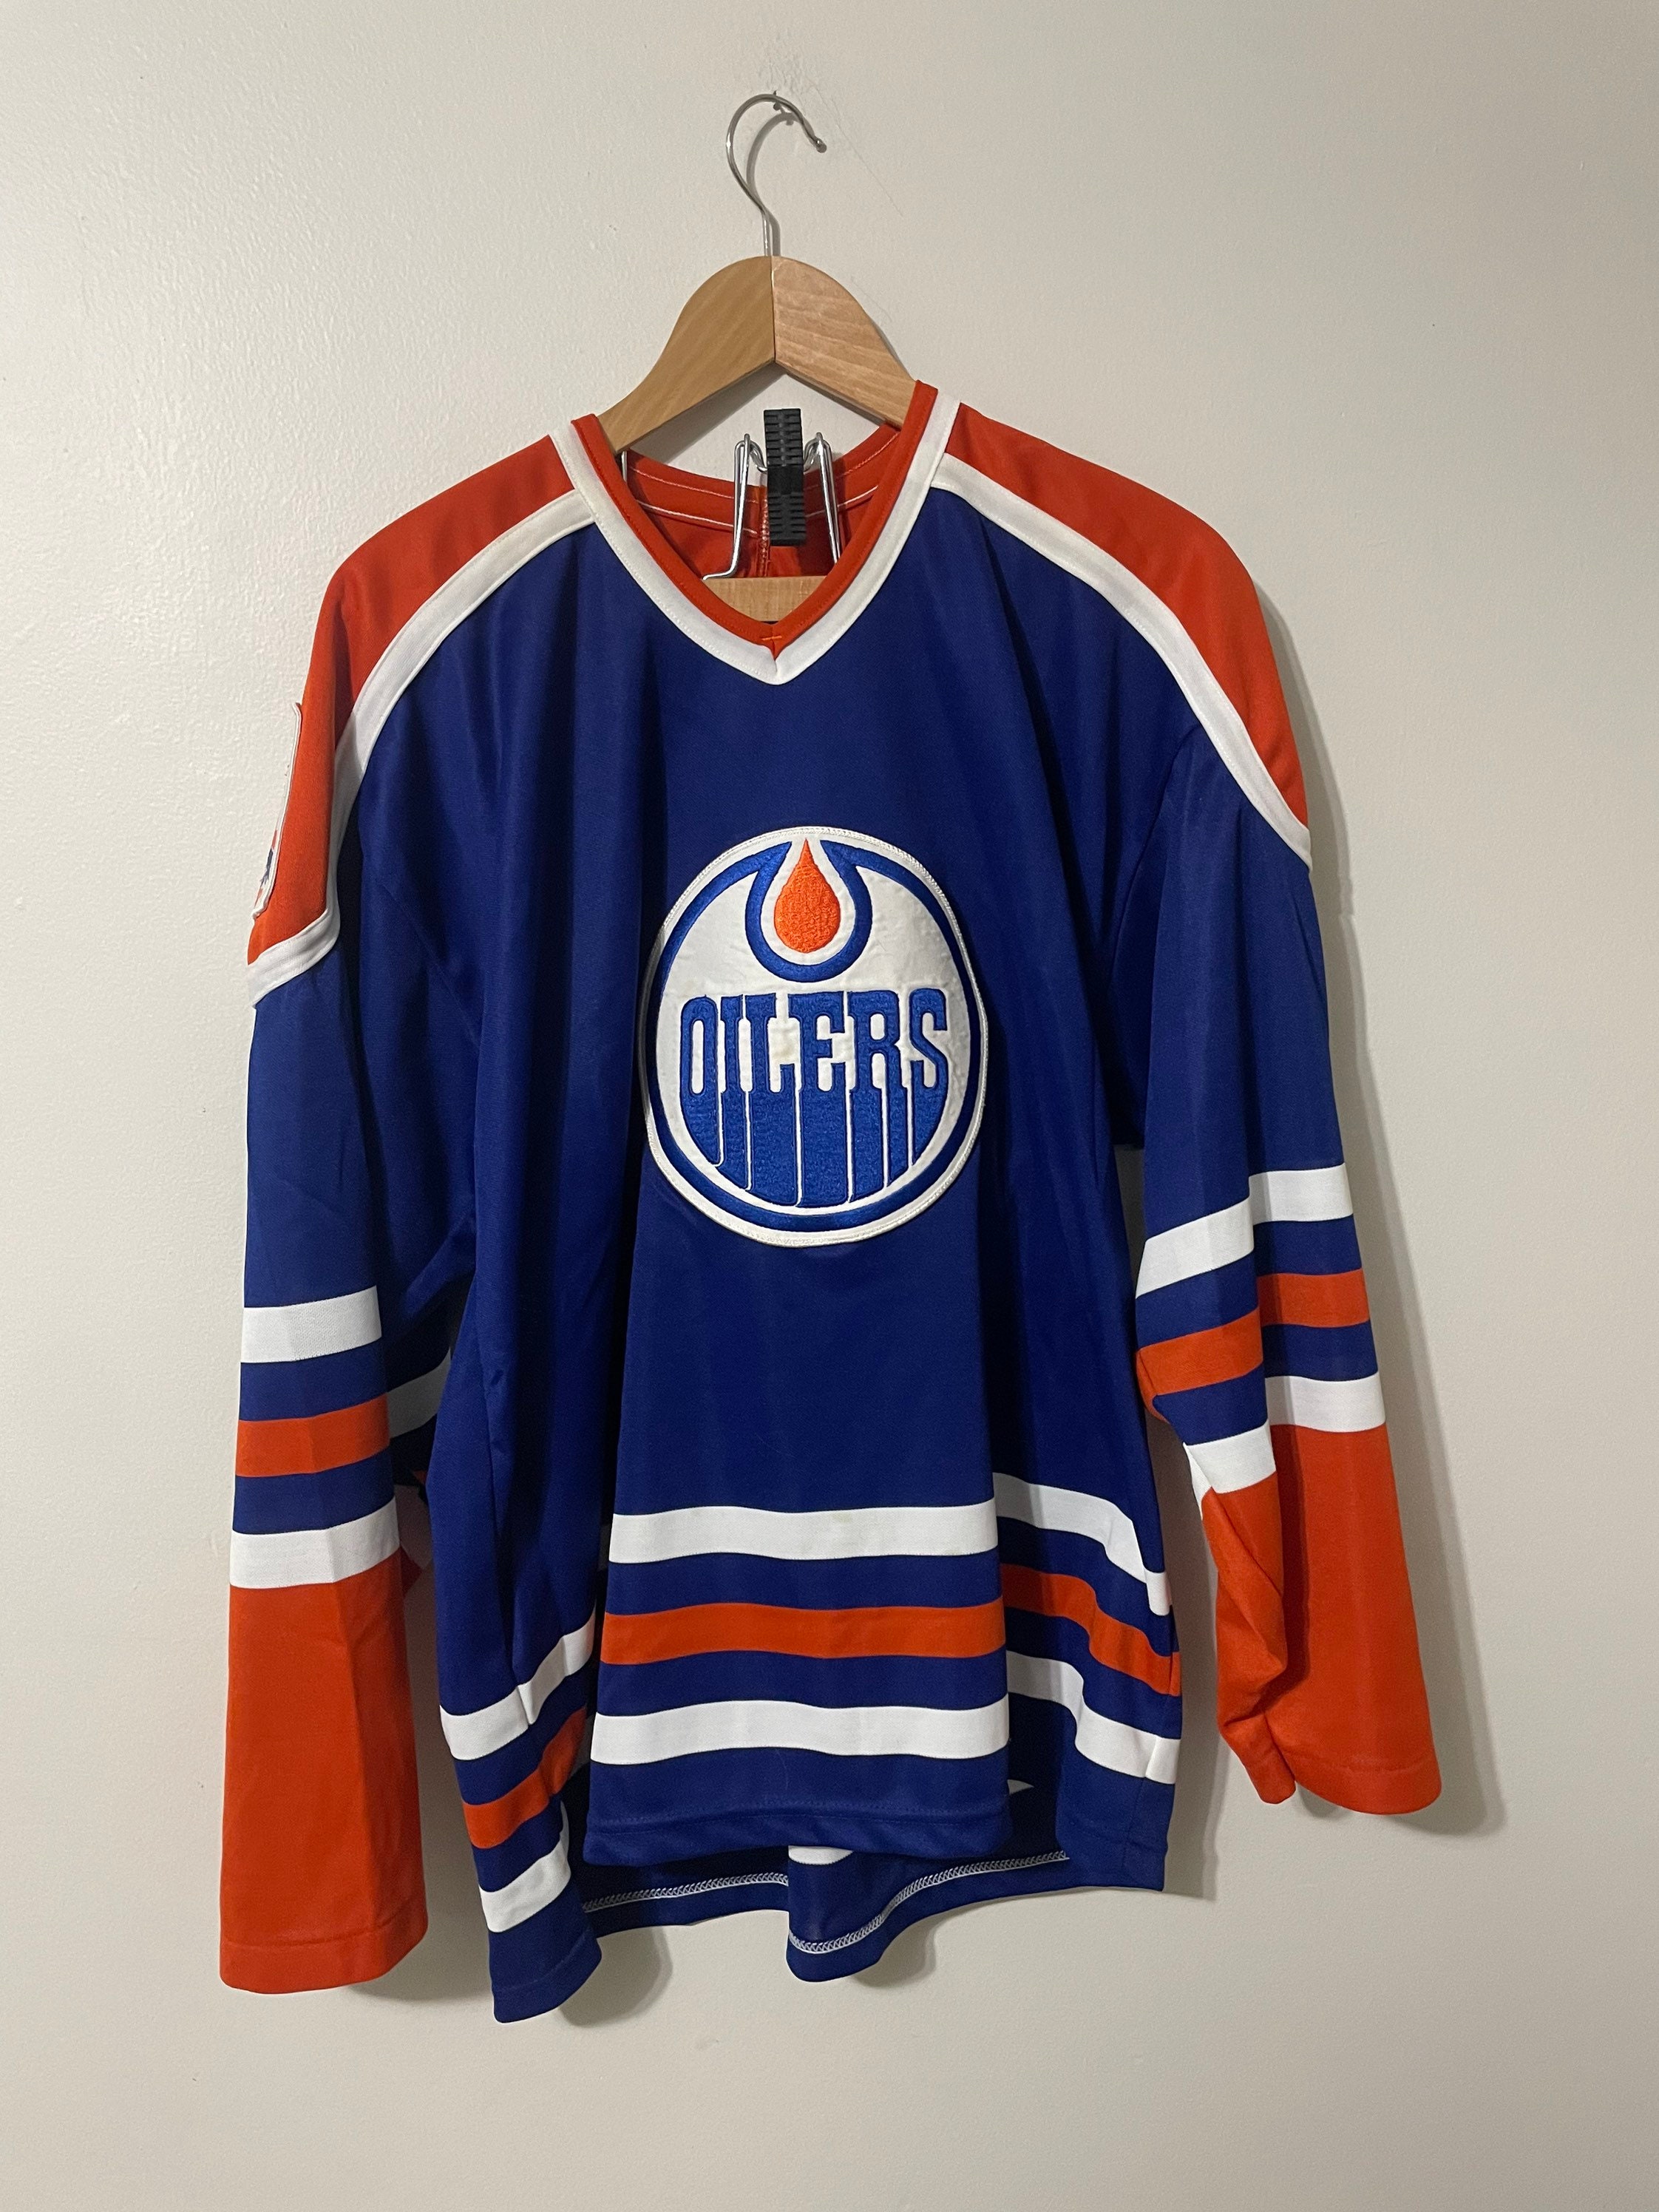 Vintage Corrigan Oilers Men's Hockey Jersey #98 Size L.